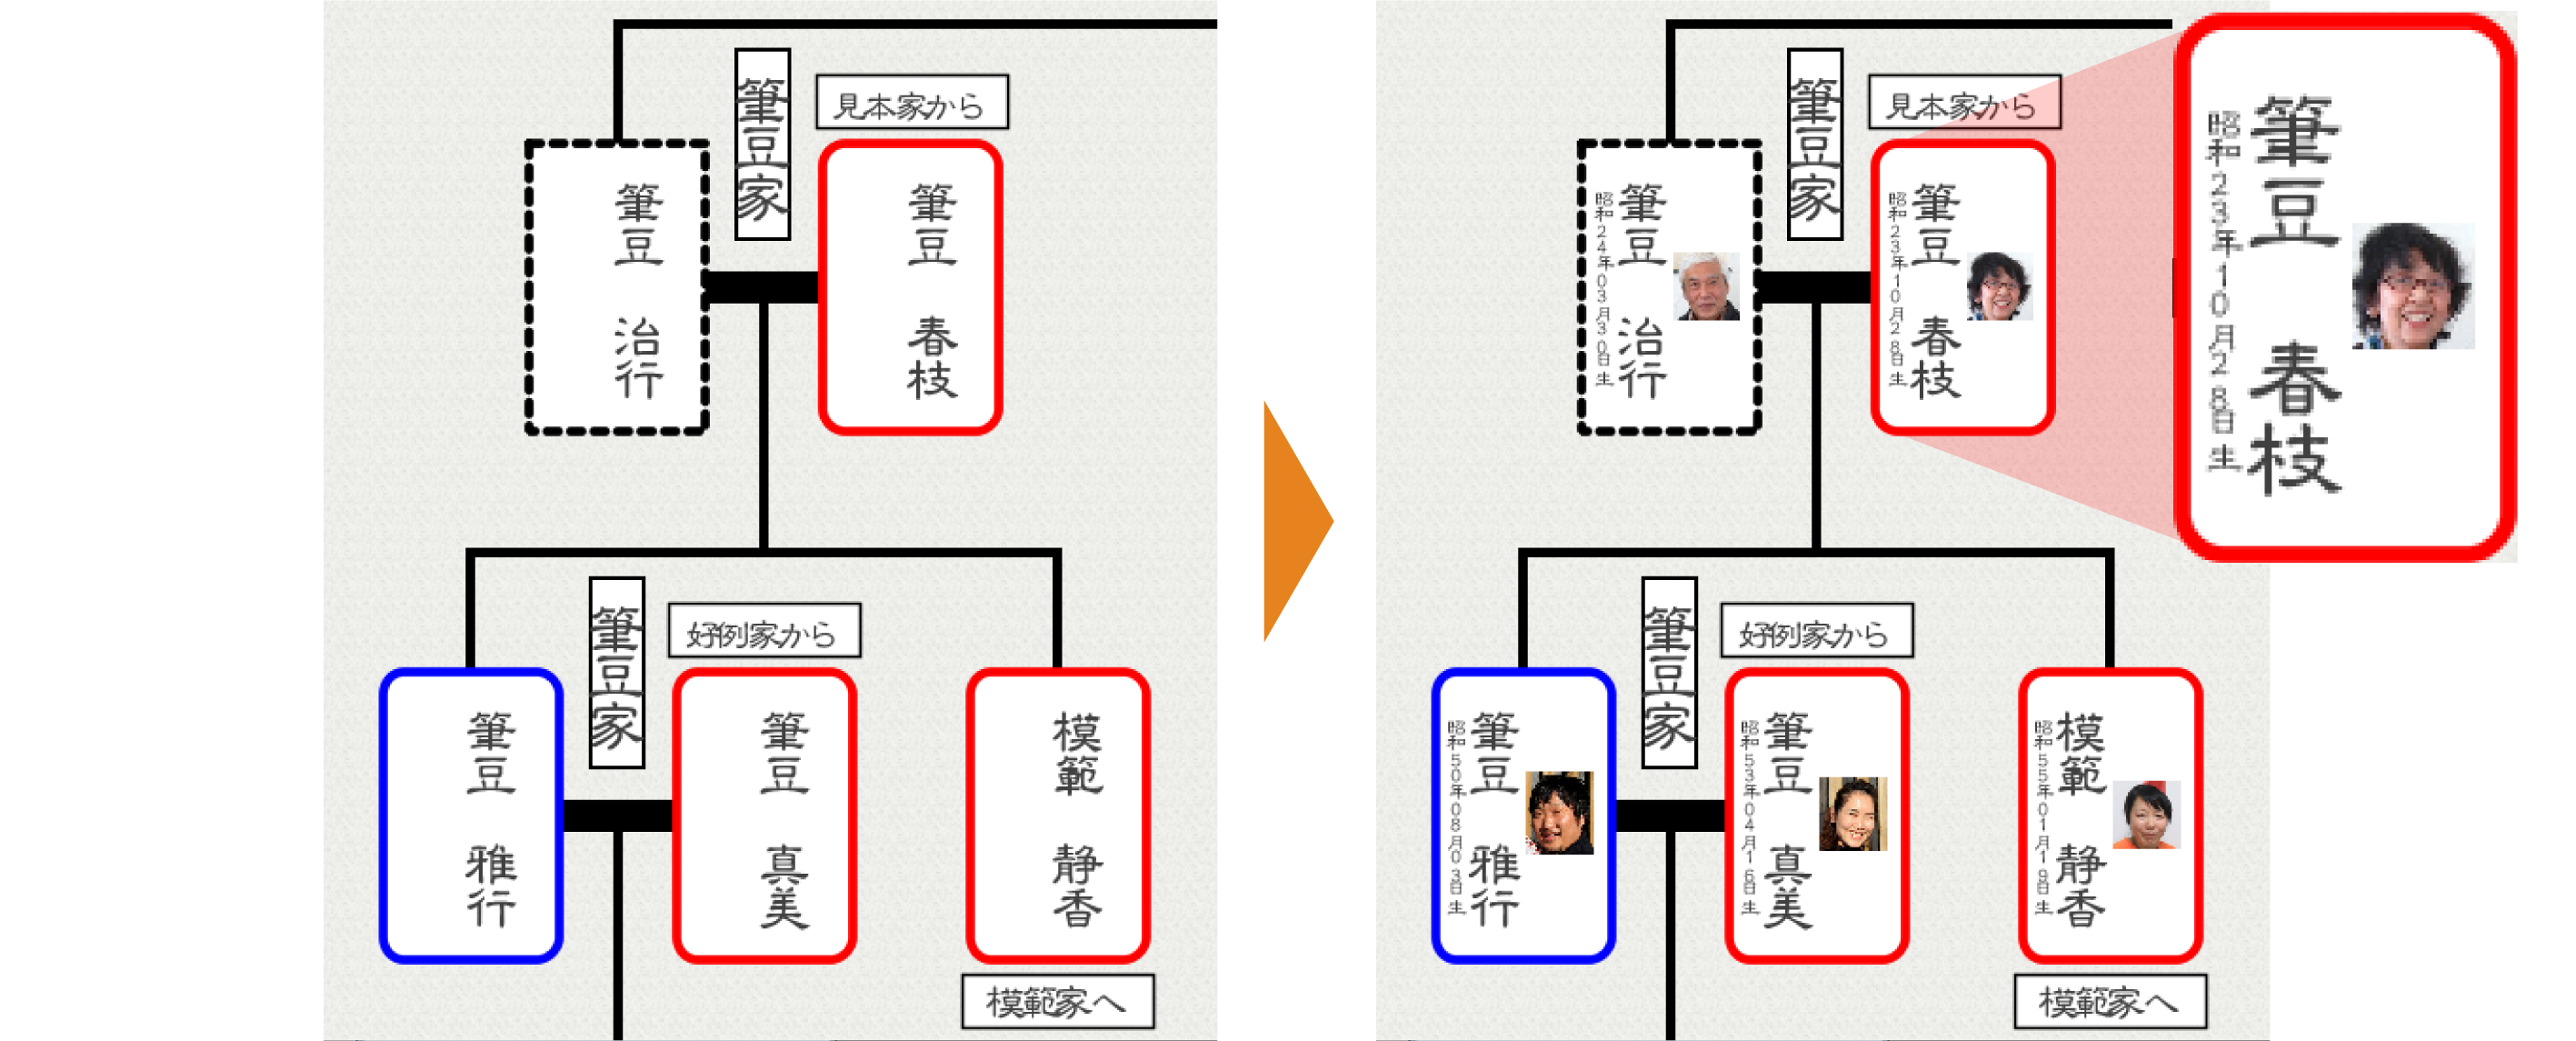 家系図を自分で作成 つくれる家系図3 ソースネクスト 製品 サポート情報